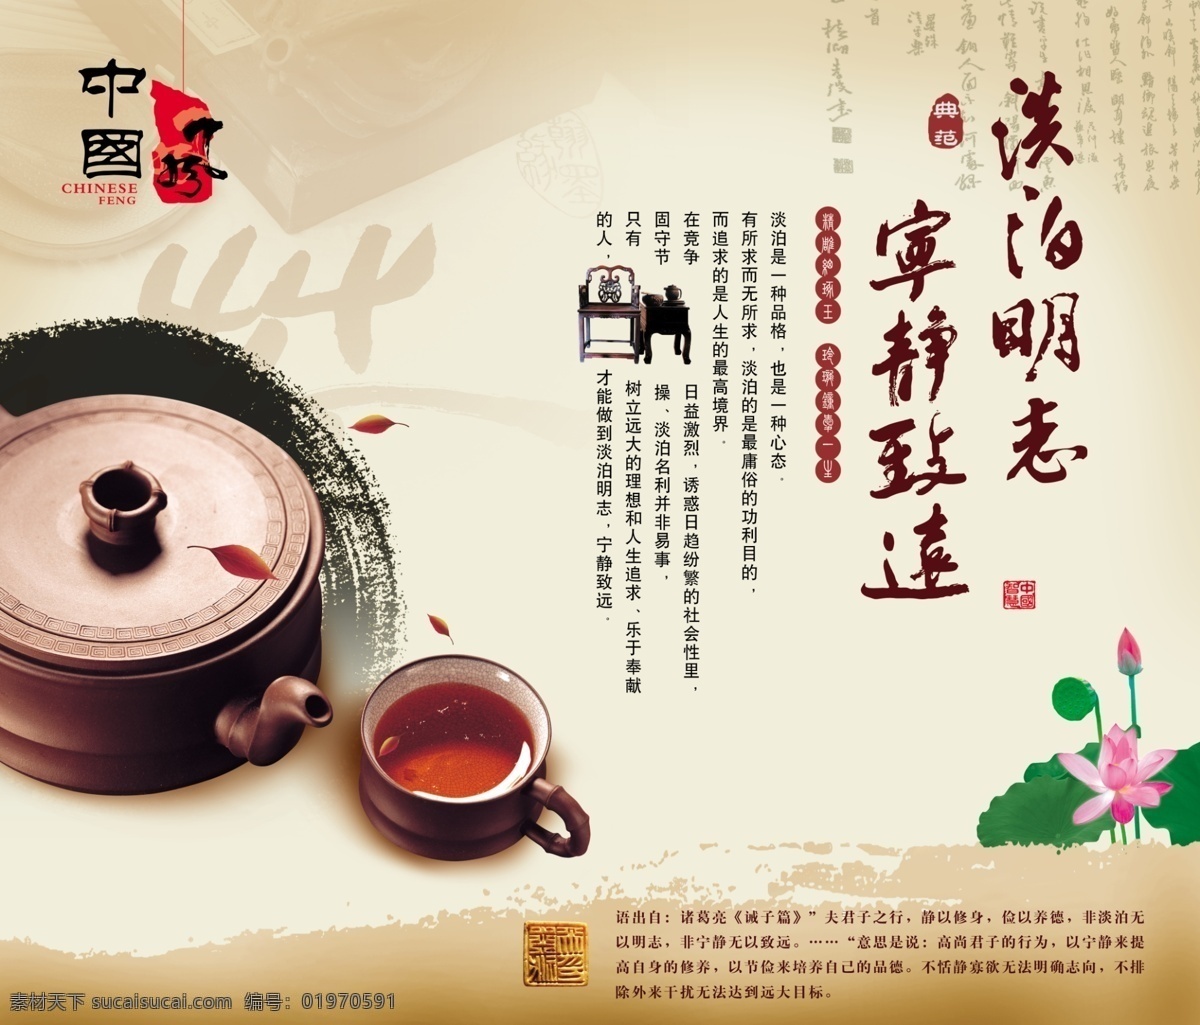 中国风 食盒 莲花 荷叶 宁静致远 淡泊明志 茶杯 茶 茶艺 茶韵 素雅 古典 浅色 海报 中国风海报